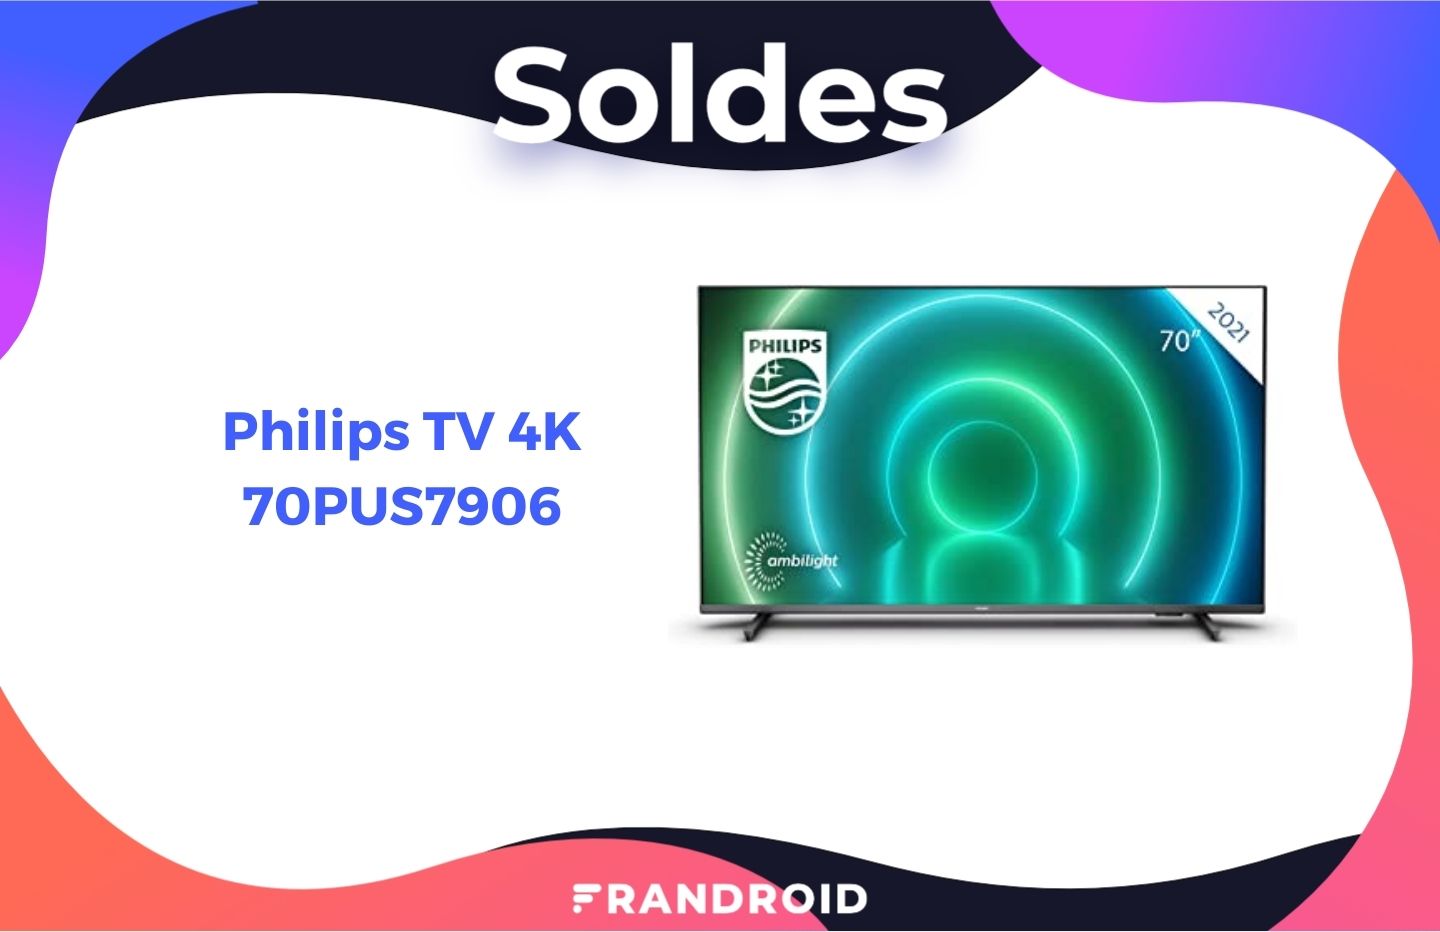 790€, c’est le prix hallucinant de ce TV 4K Philips 70 pouces pendant les soldes